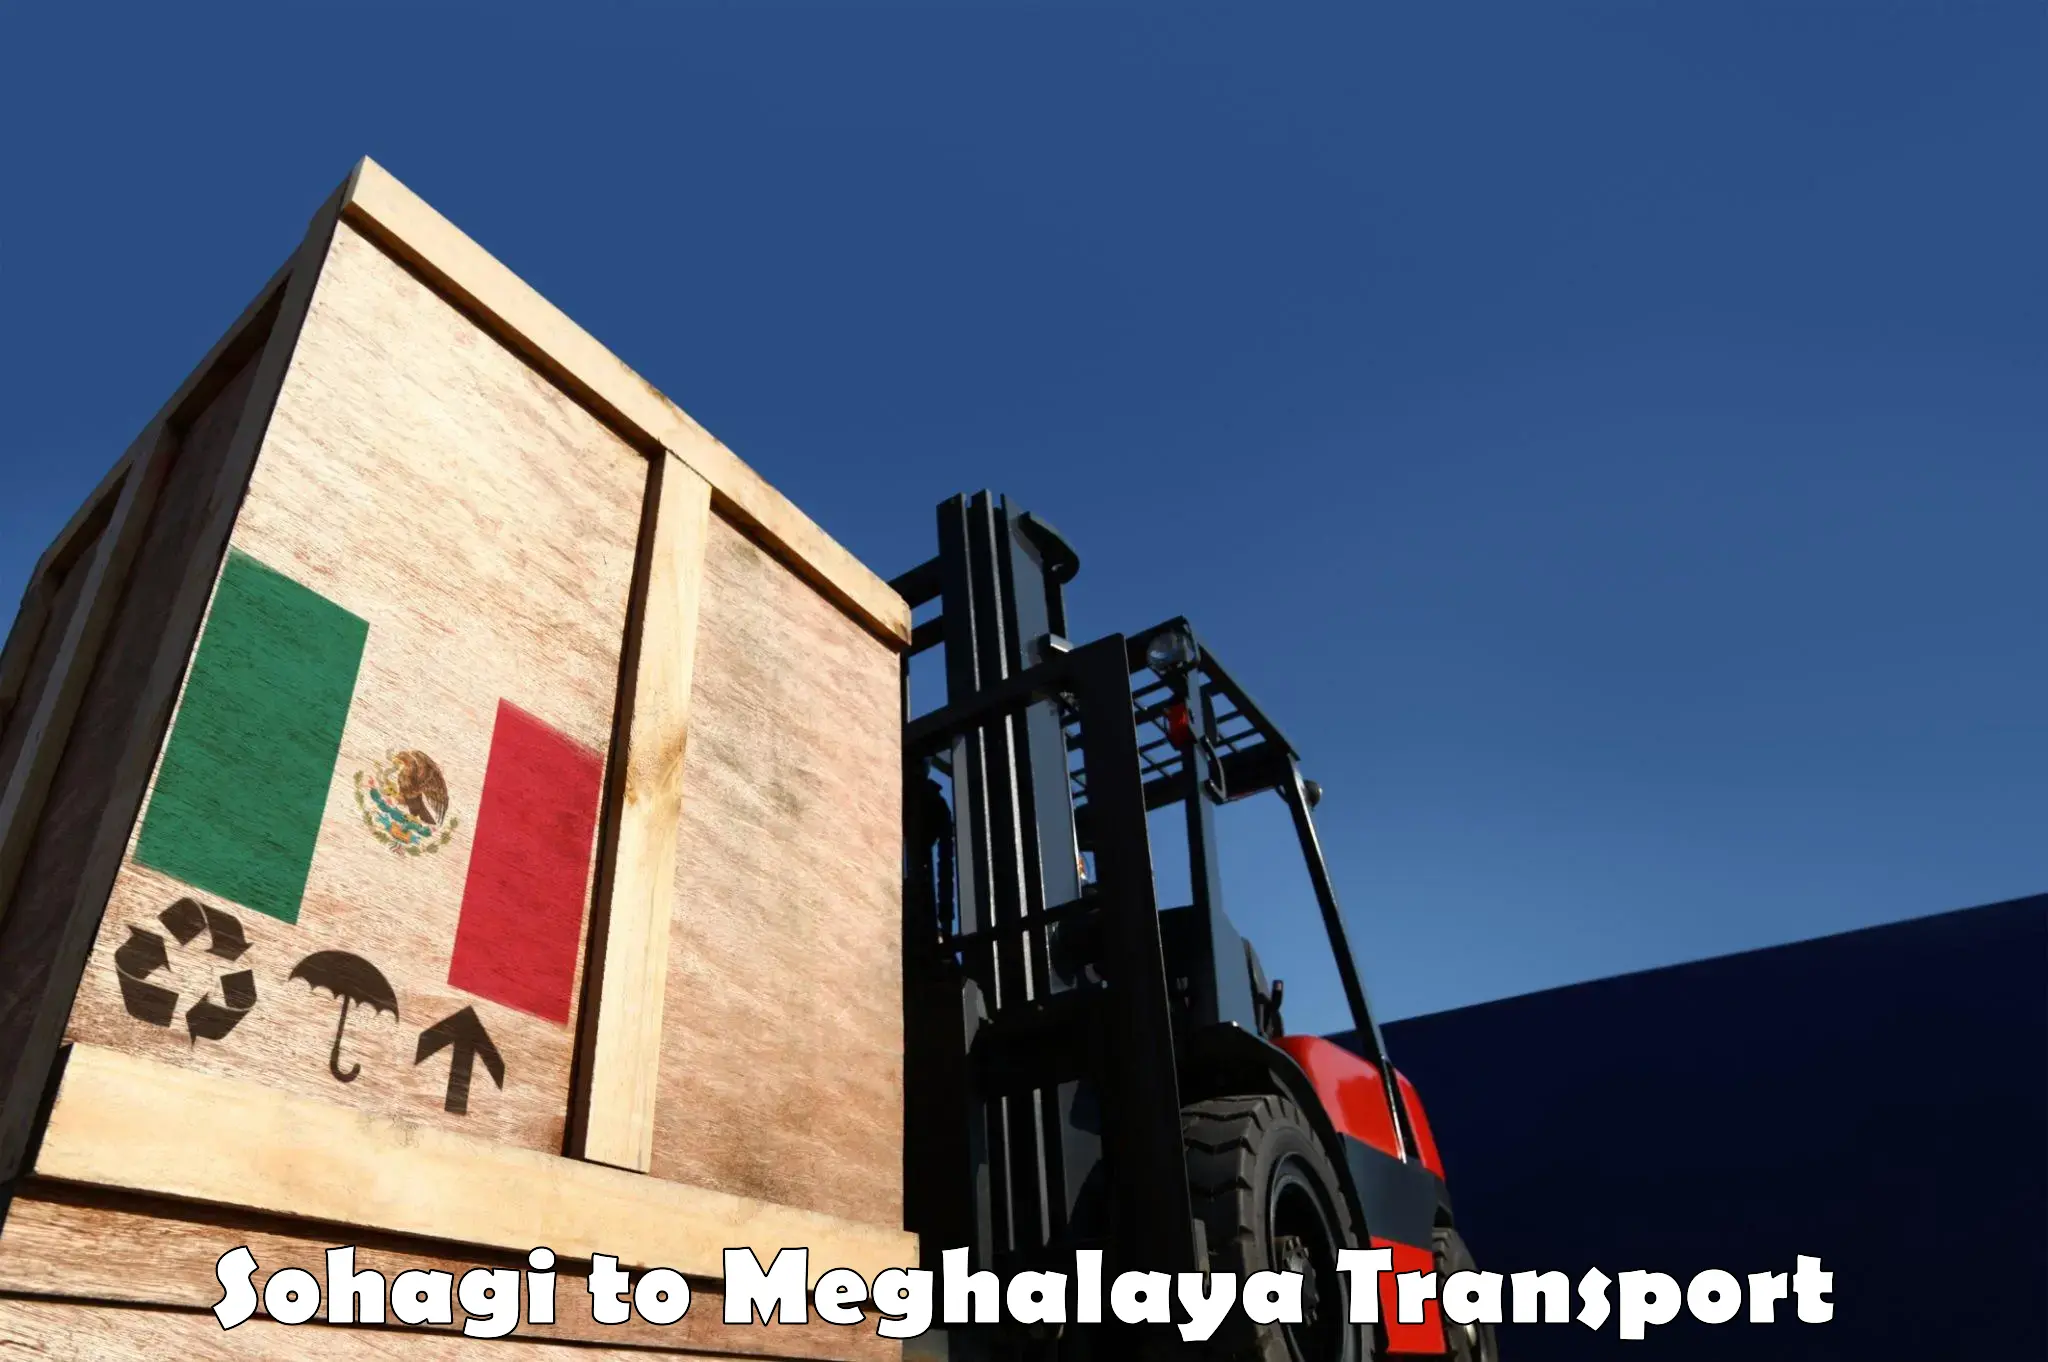 Cargo train transport services Sohagi to Meghalaya